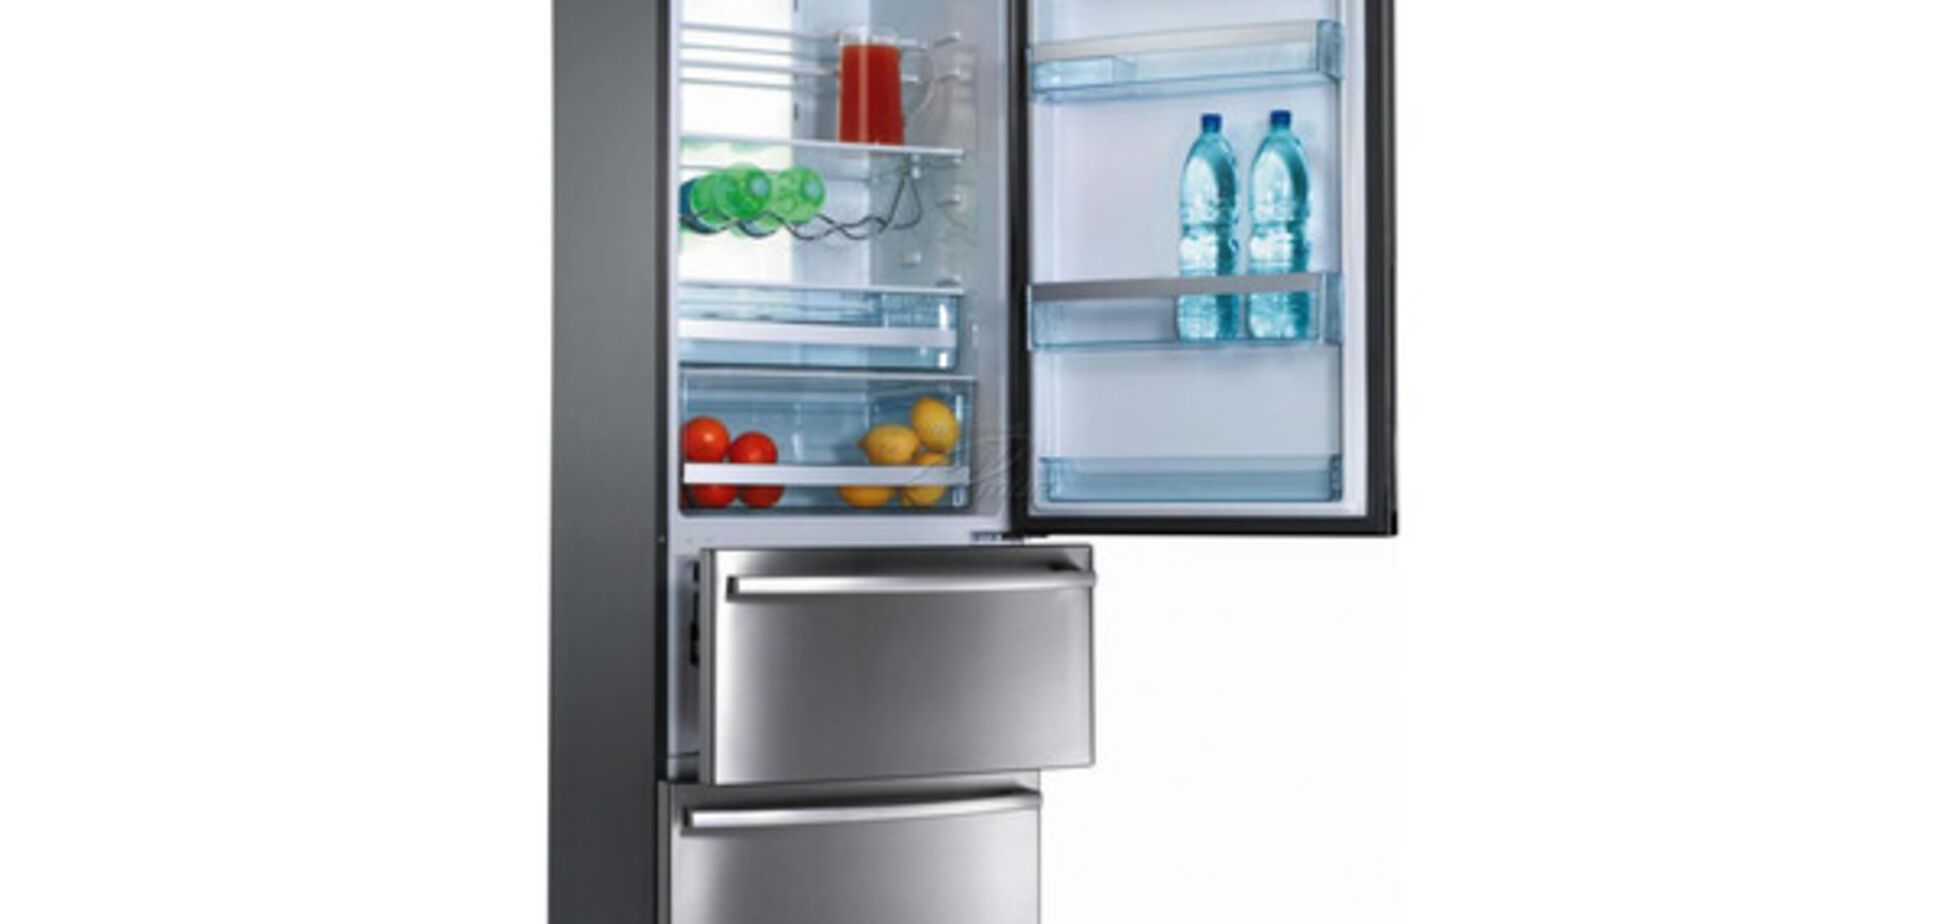 6 лайфхаков, которые помогут пользоваться холодильником с наибольшей пользой